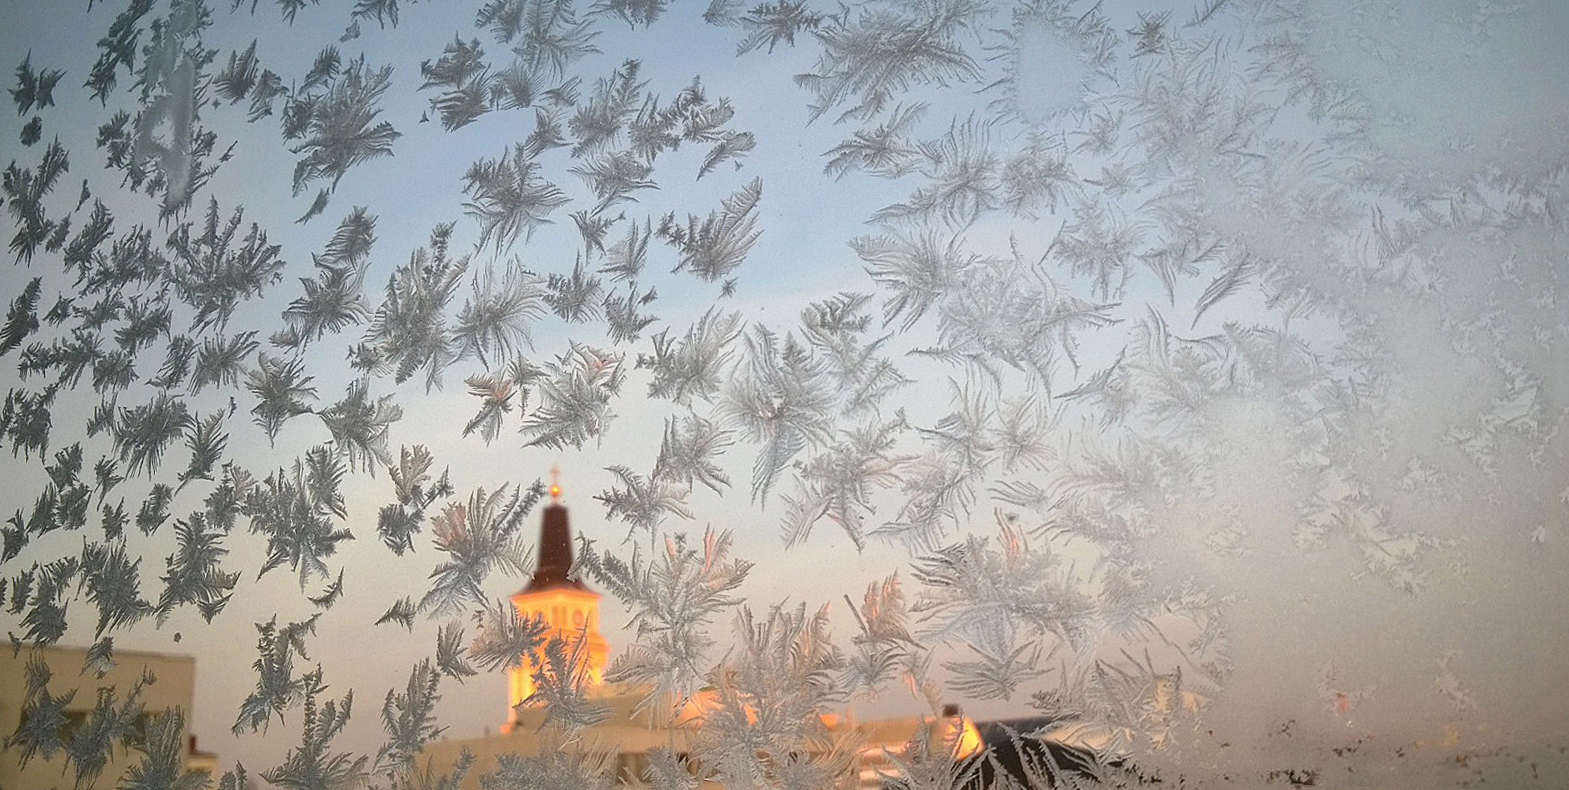 Oulun tuomiokirkkoseurakunnan risti kuvattuna pakkaspäivänä ikkunan läpi.Ikkunassa on kuurankukkia. Kuva: S...